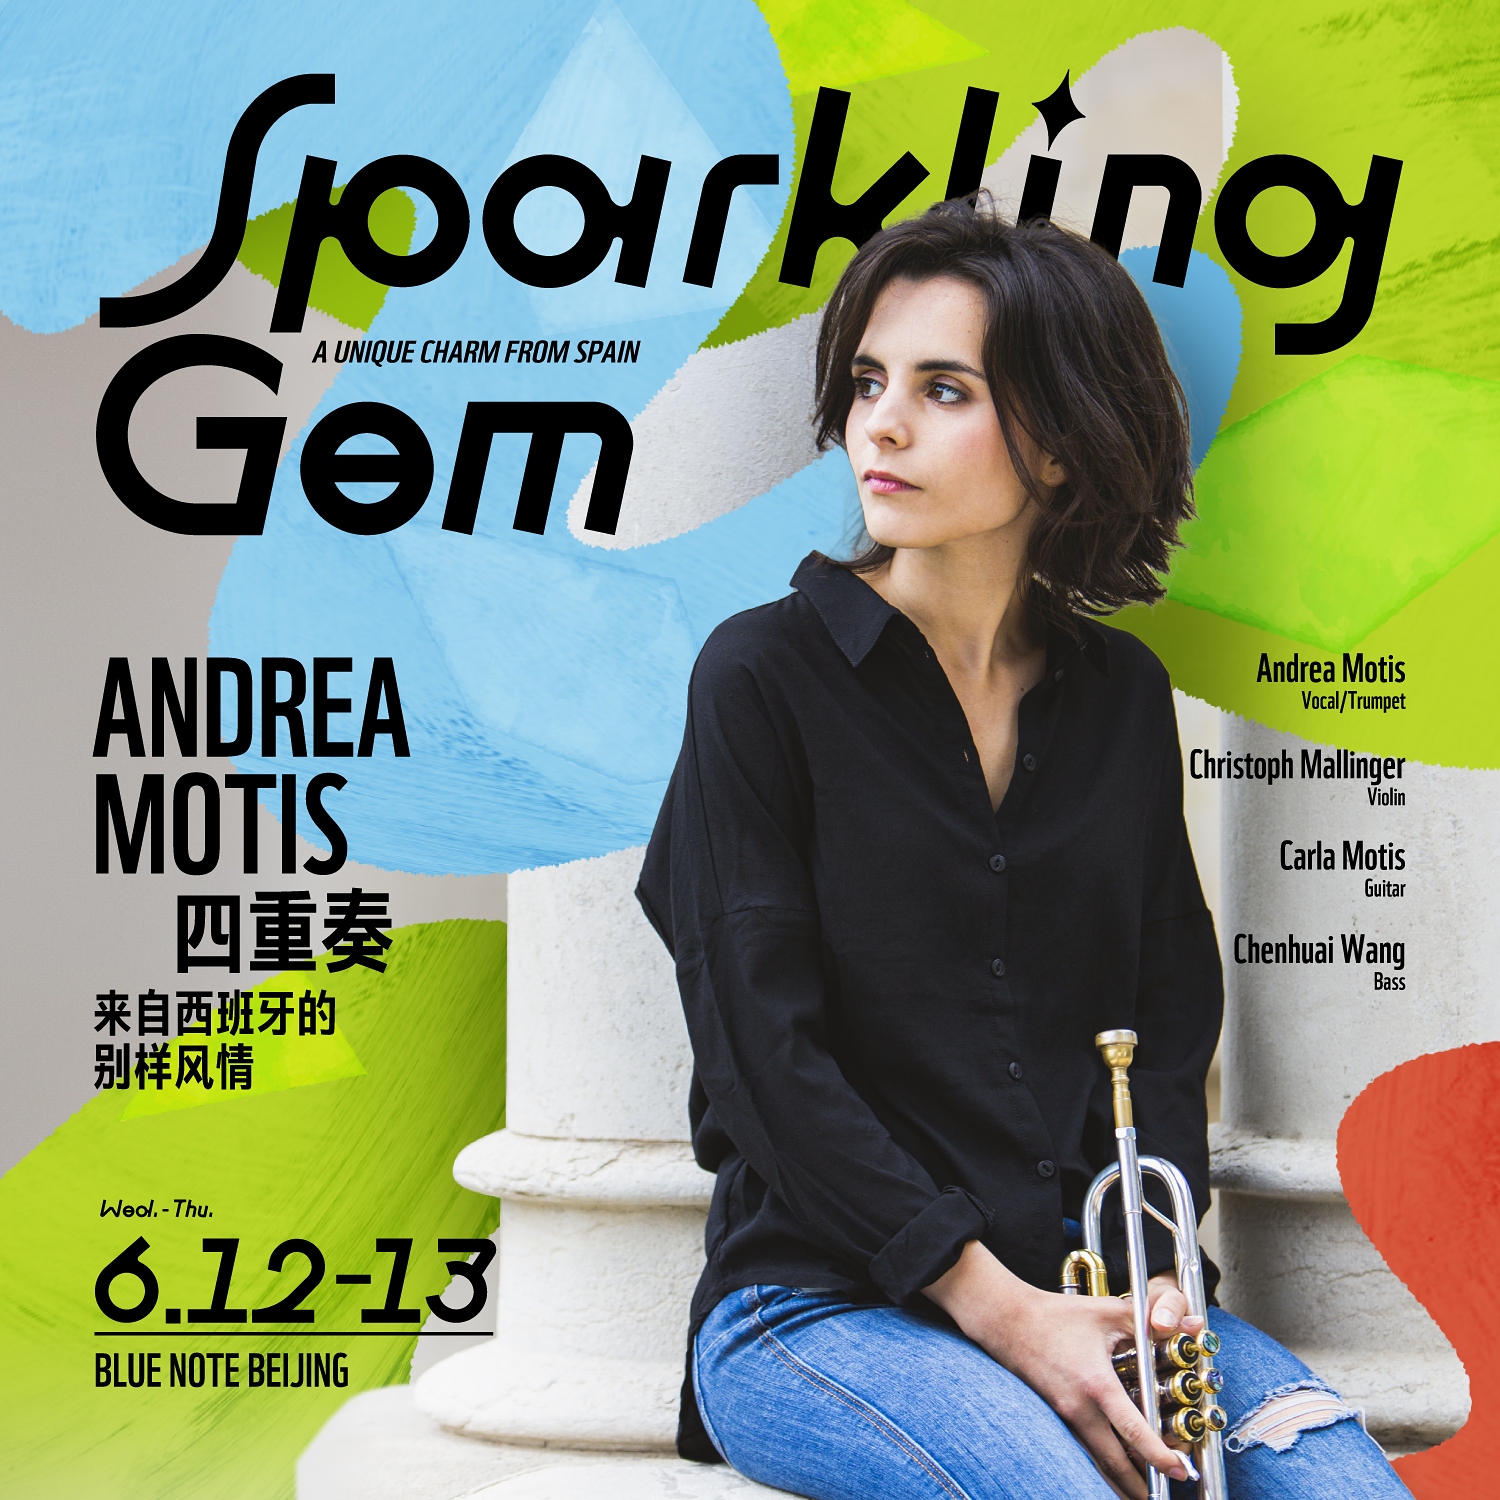 北京 | 6.12-13 「Sparkling Gem」95后爵士精灵Andrea Motis，感受美貌与音乐的双重魅力